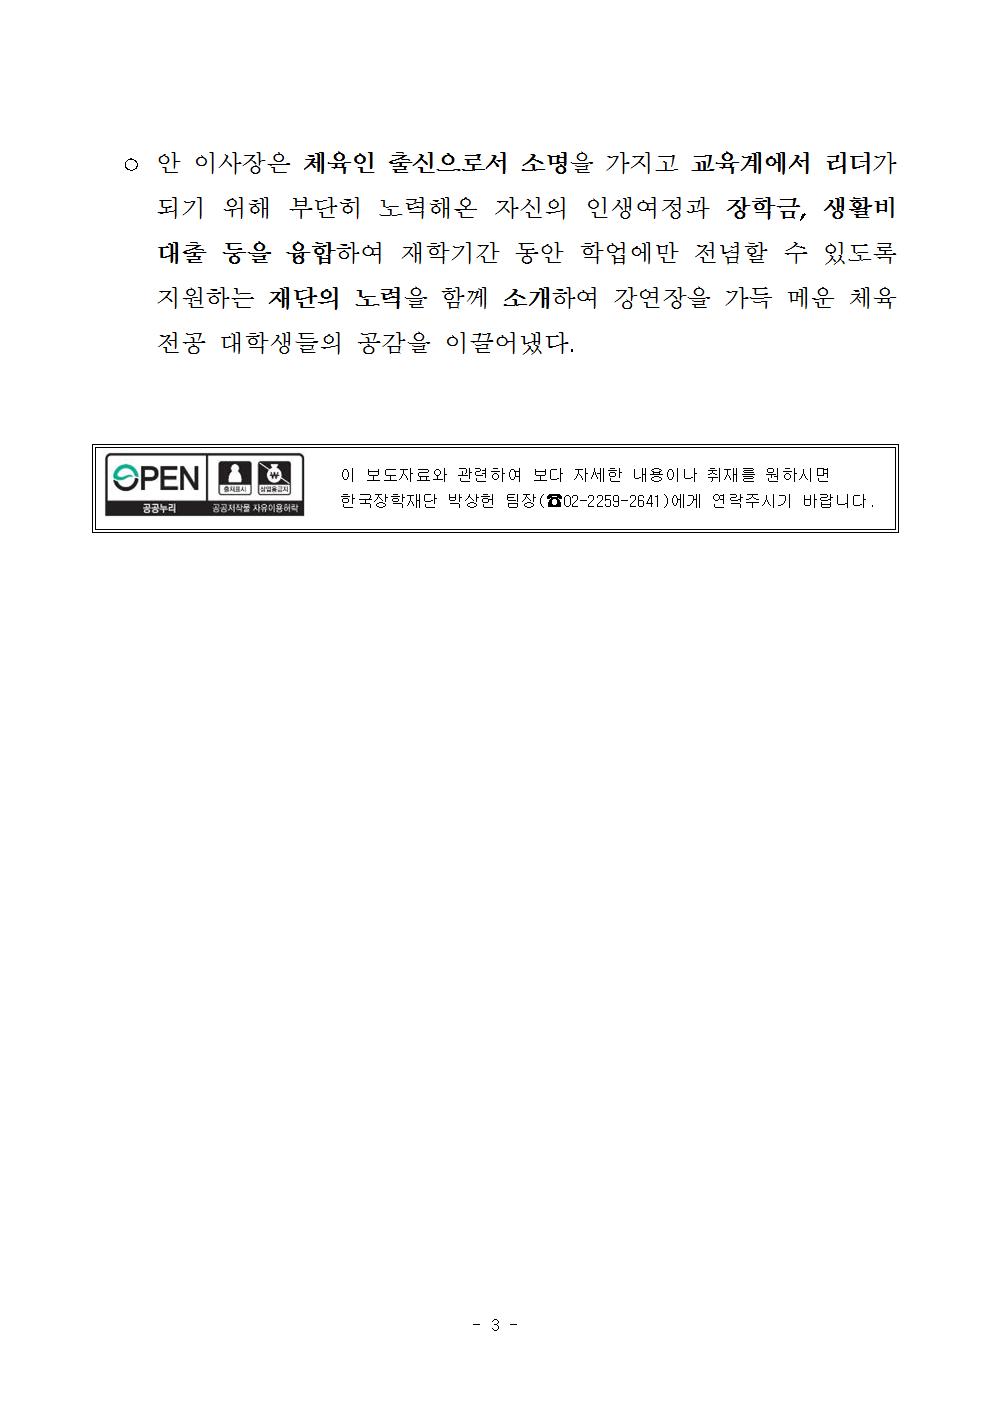 04-26(수)[보도자료] 한국장학재단, 계명대학교와 업무협약 체결003.jpg